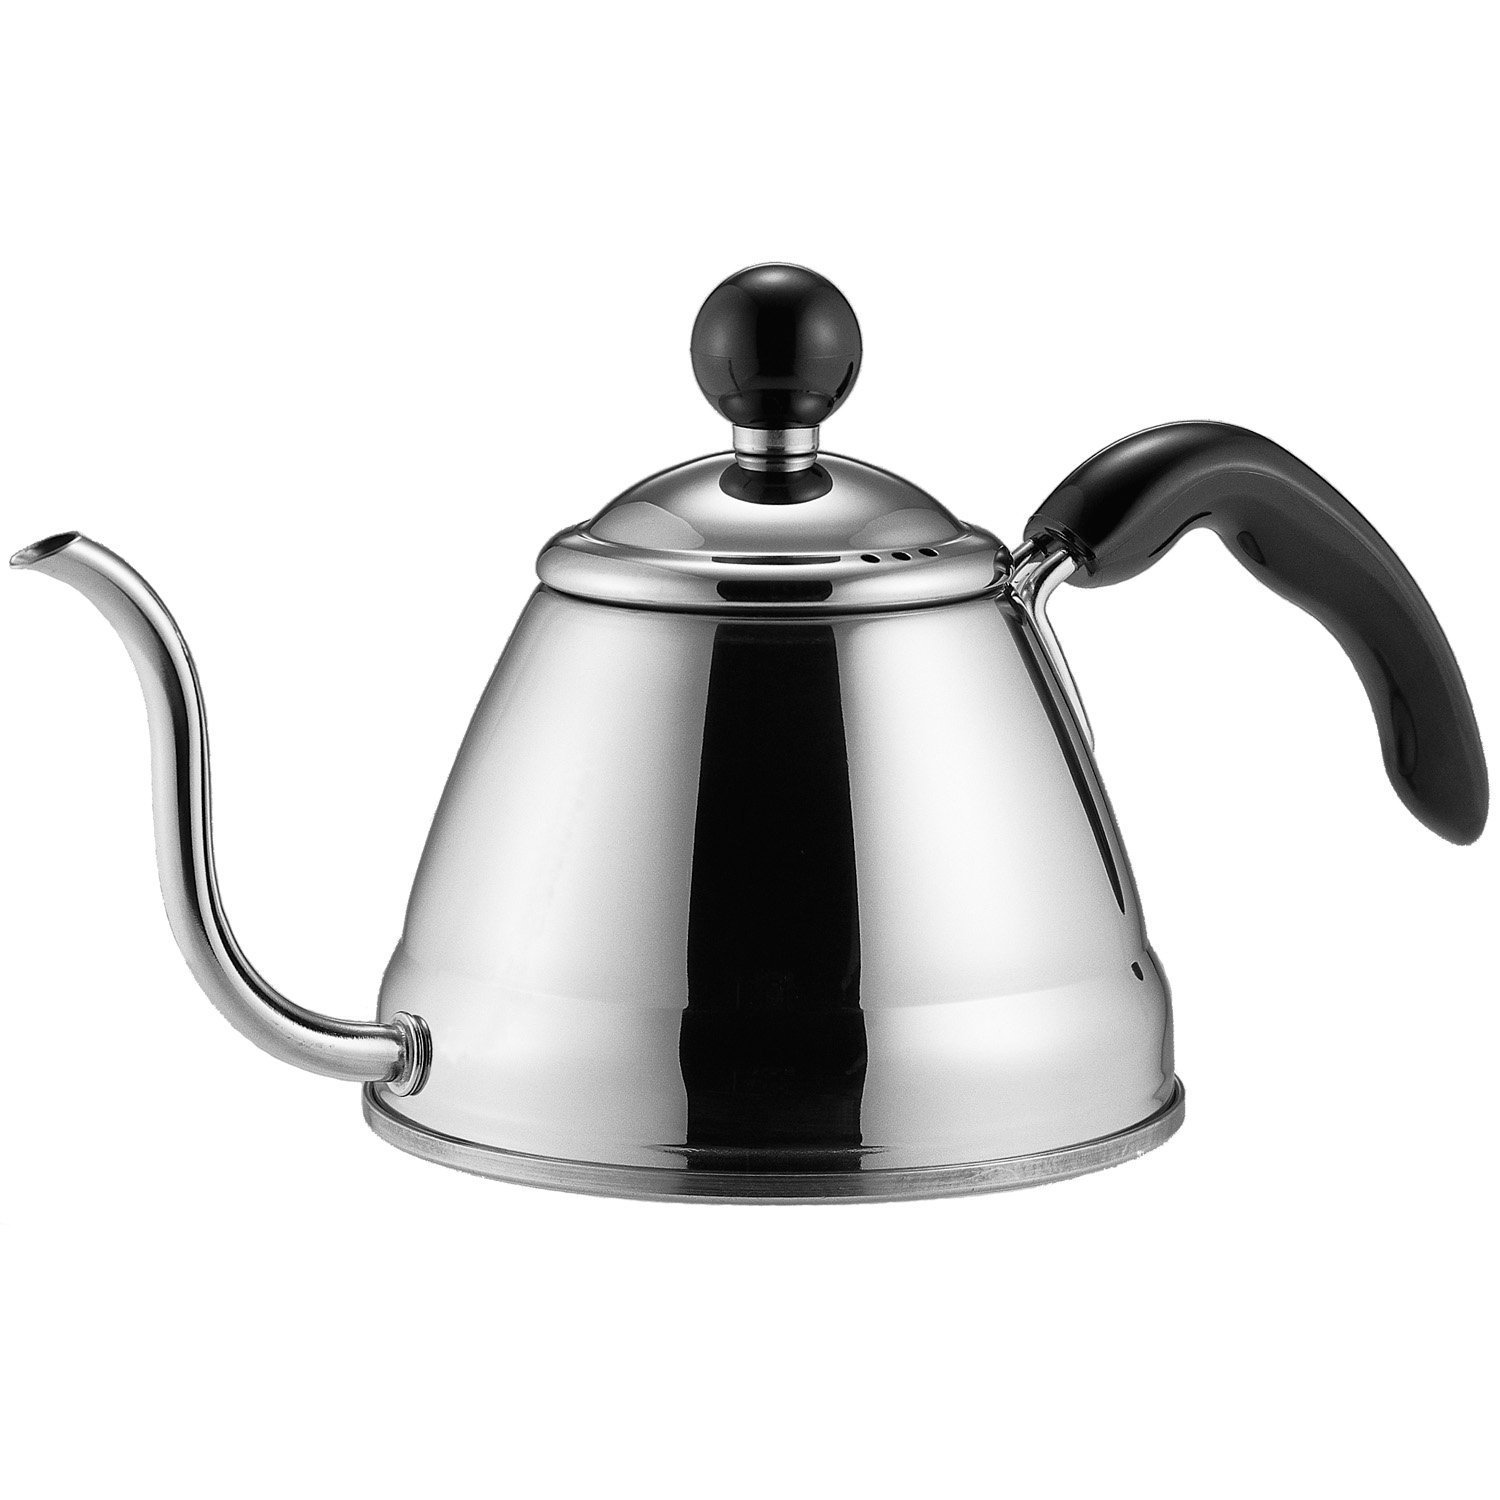 신뢰할 수있는 품질의 스테인레스 스틸 차 커피 주전자 거위 목처럼 얇은 주둥이로 커피를 부어주세요.